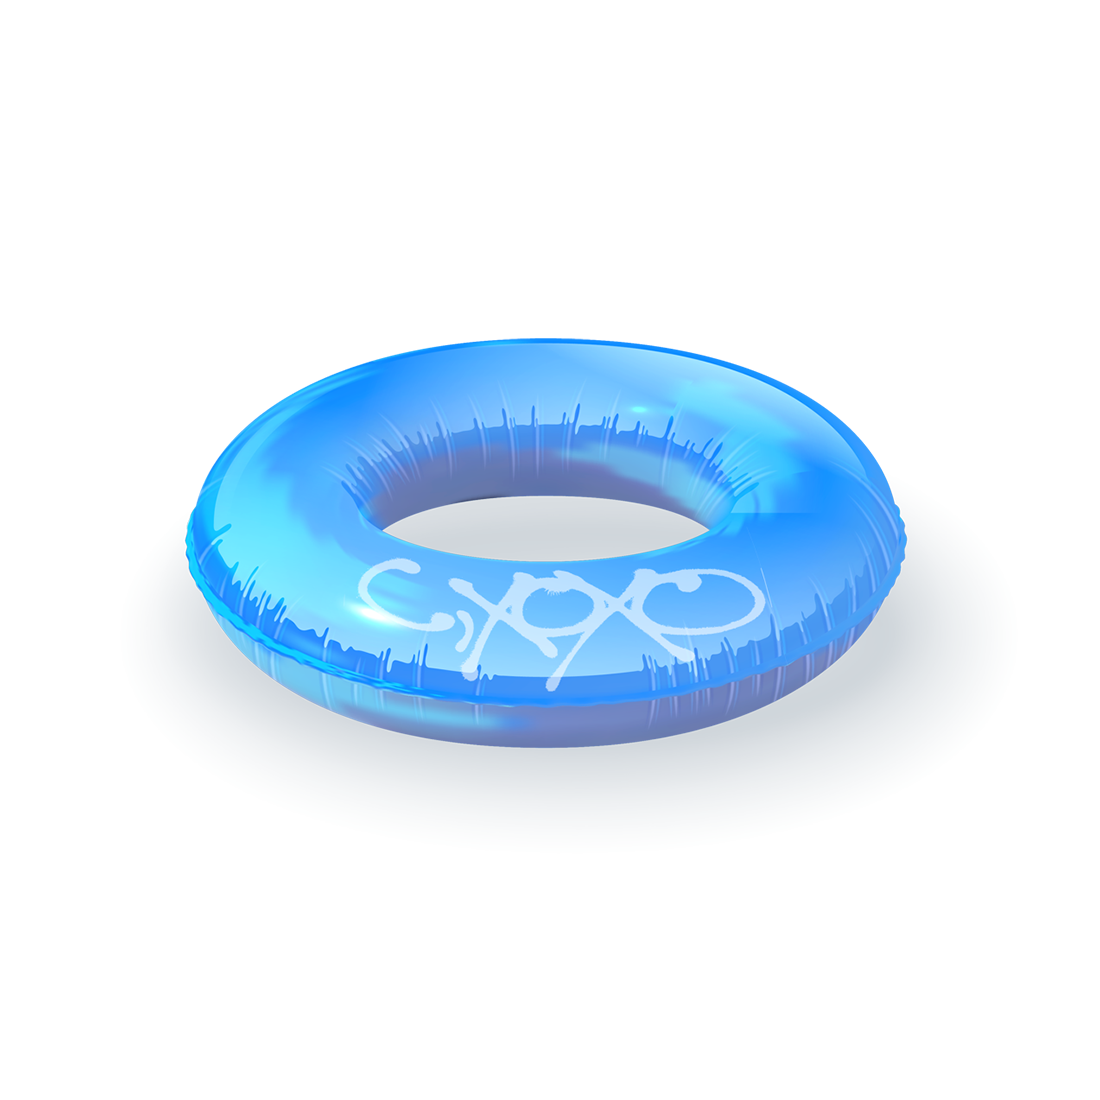 C,XOXO Pool Float